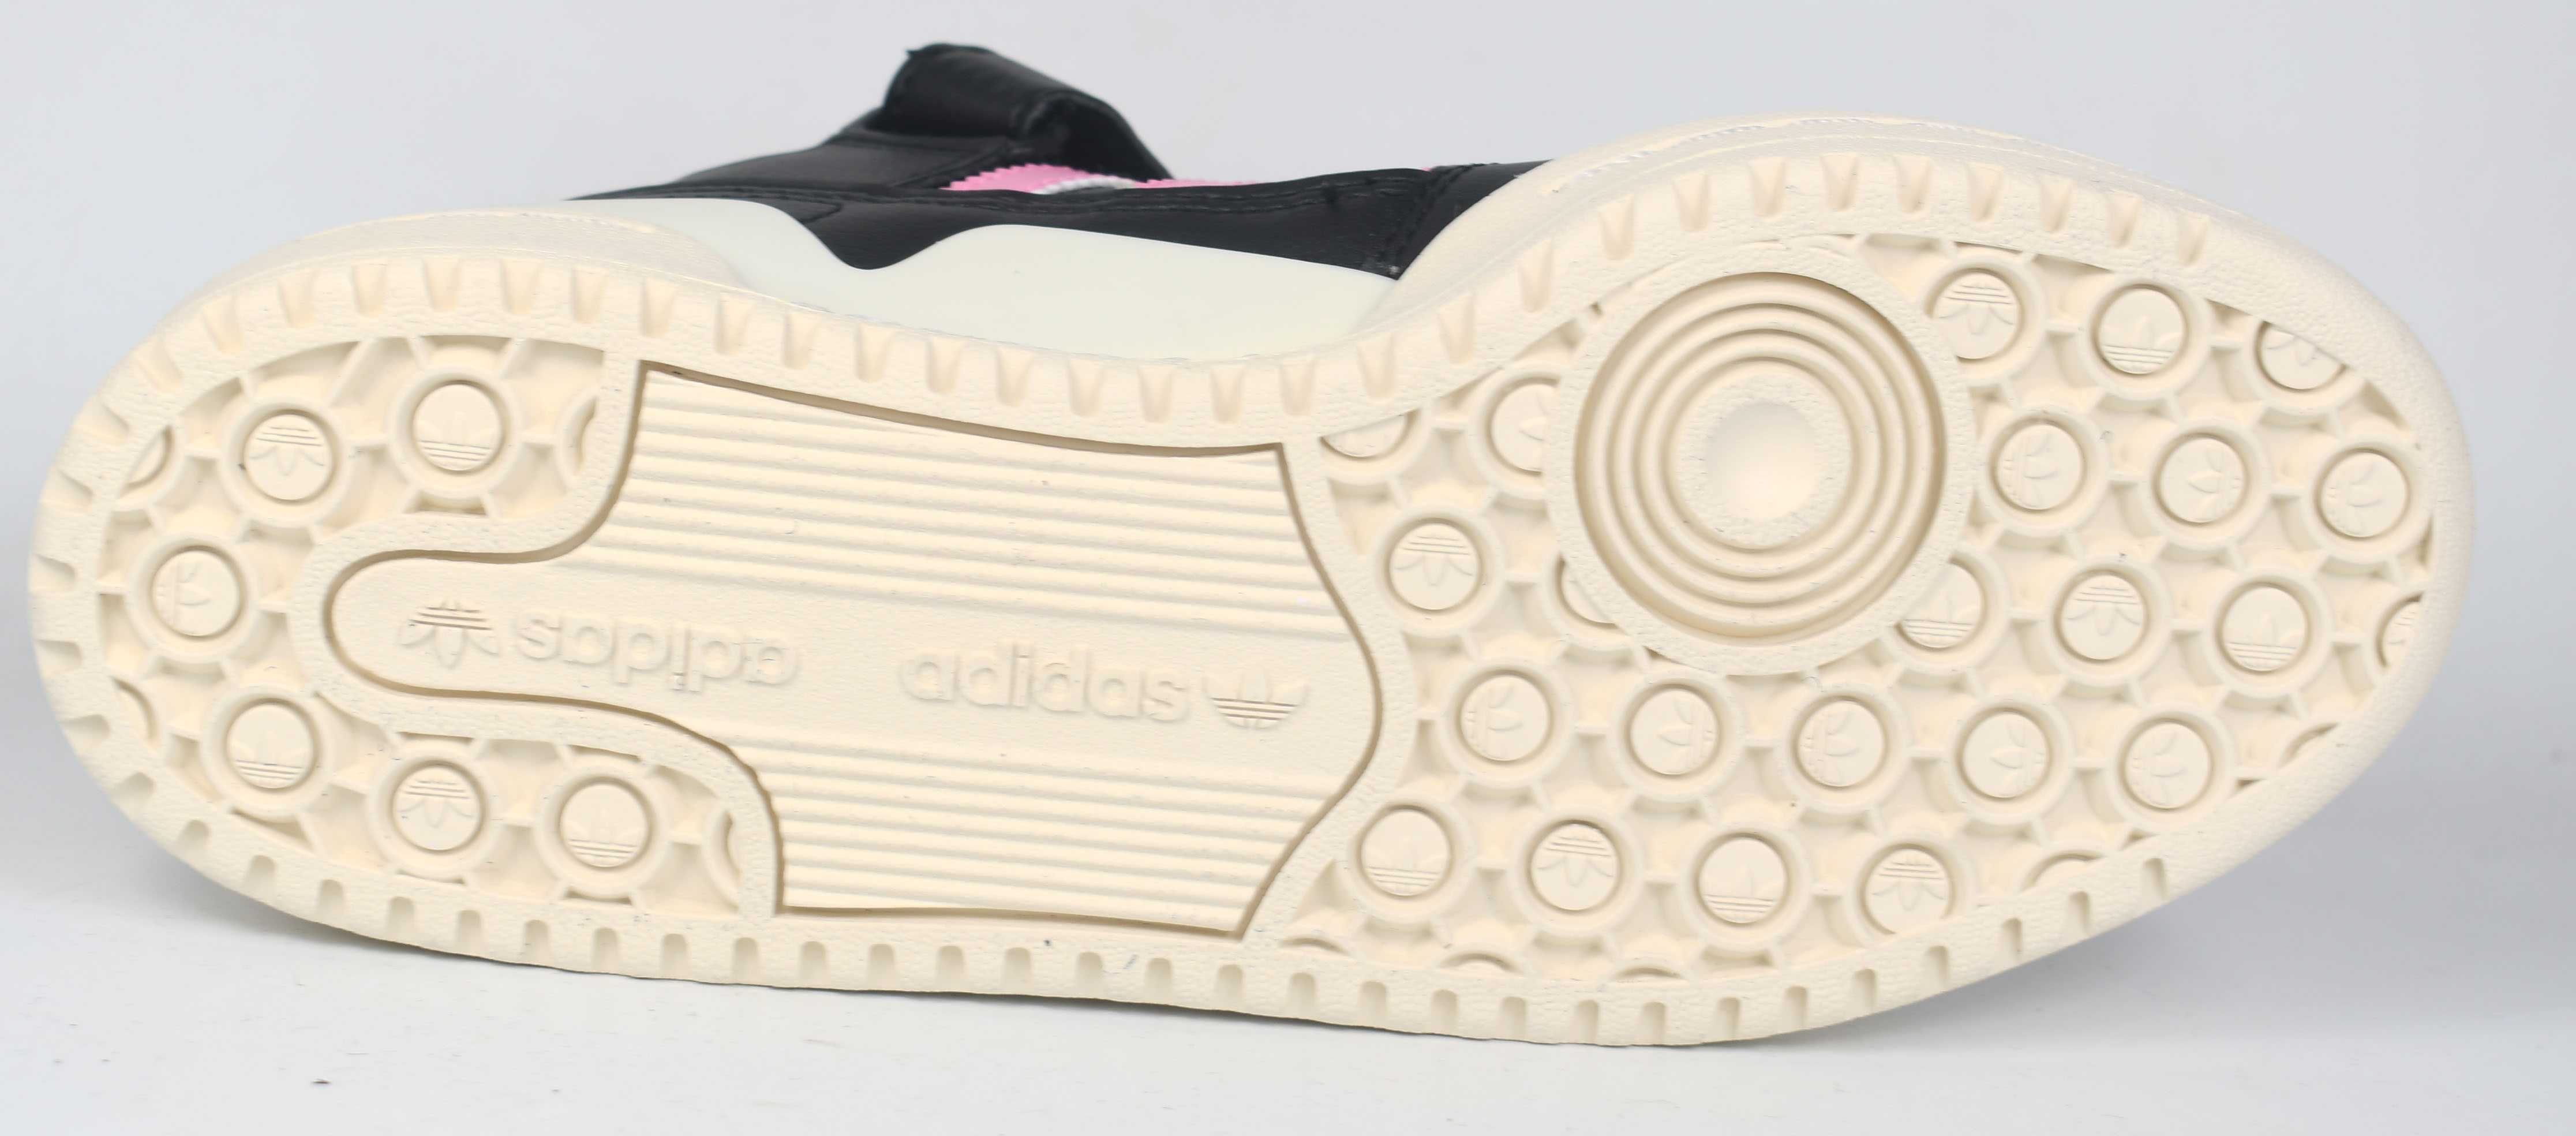 Adidas buty damskie sportowe Forum Low rozmiar 38 2/3